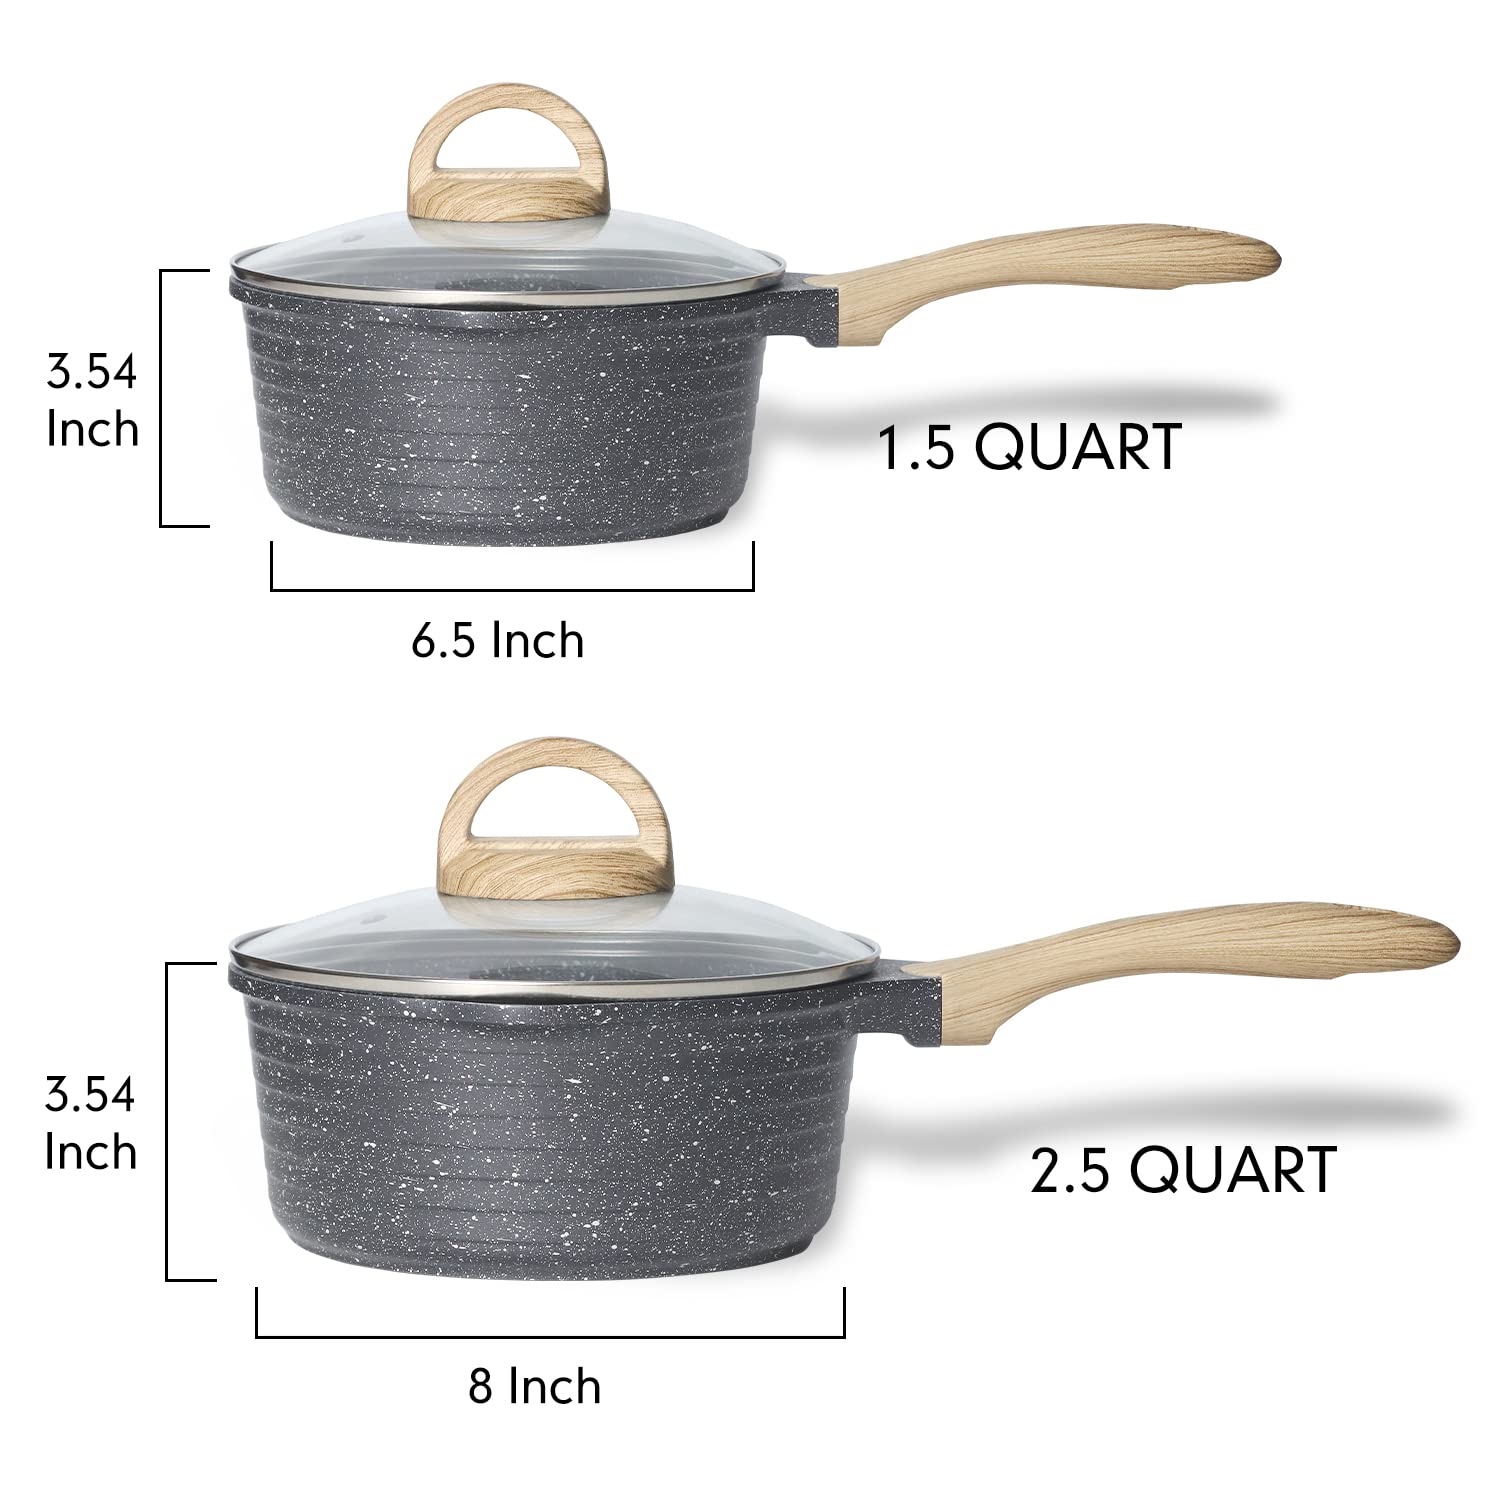 JEETEE Pots Nonstick, 1.5 Quart & 2.5 Quart Induction Granite Coating Saucepan Sets with Glass Lid & Pour Spout, PFOA Free (Grey, 4pcs Pots Set)